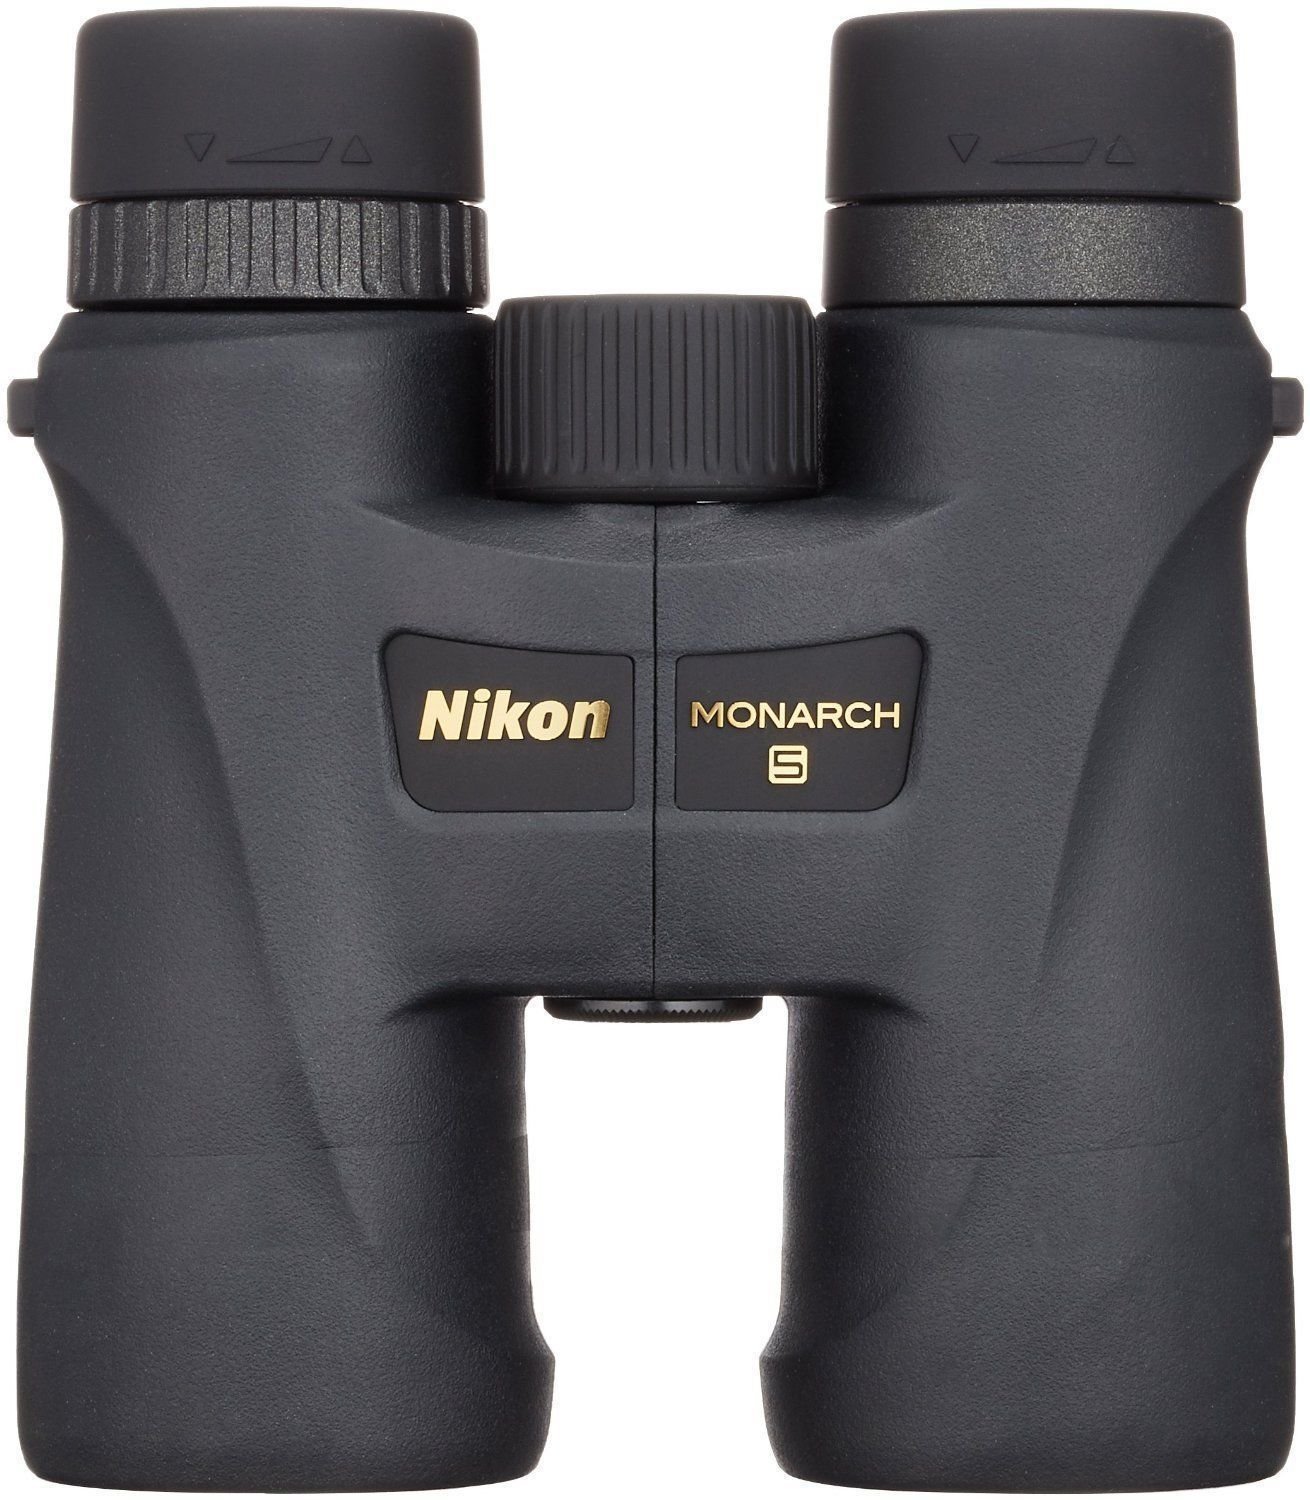 Field binocular Nikon Monarch 5 8x42